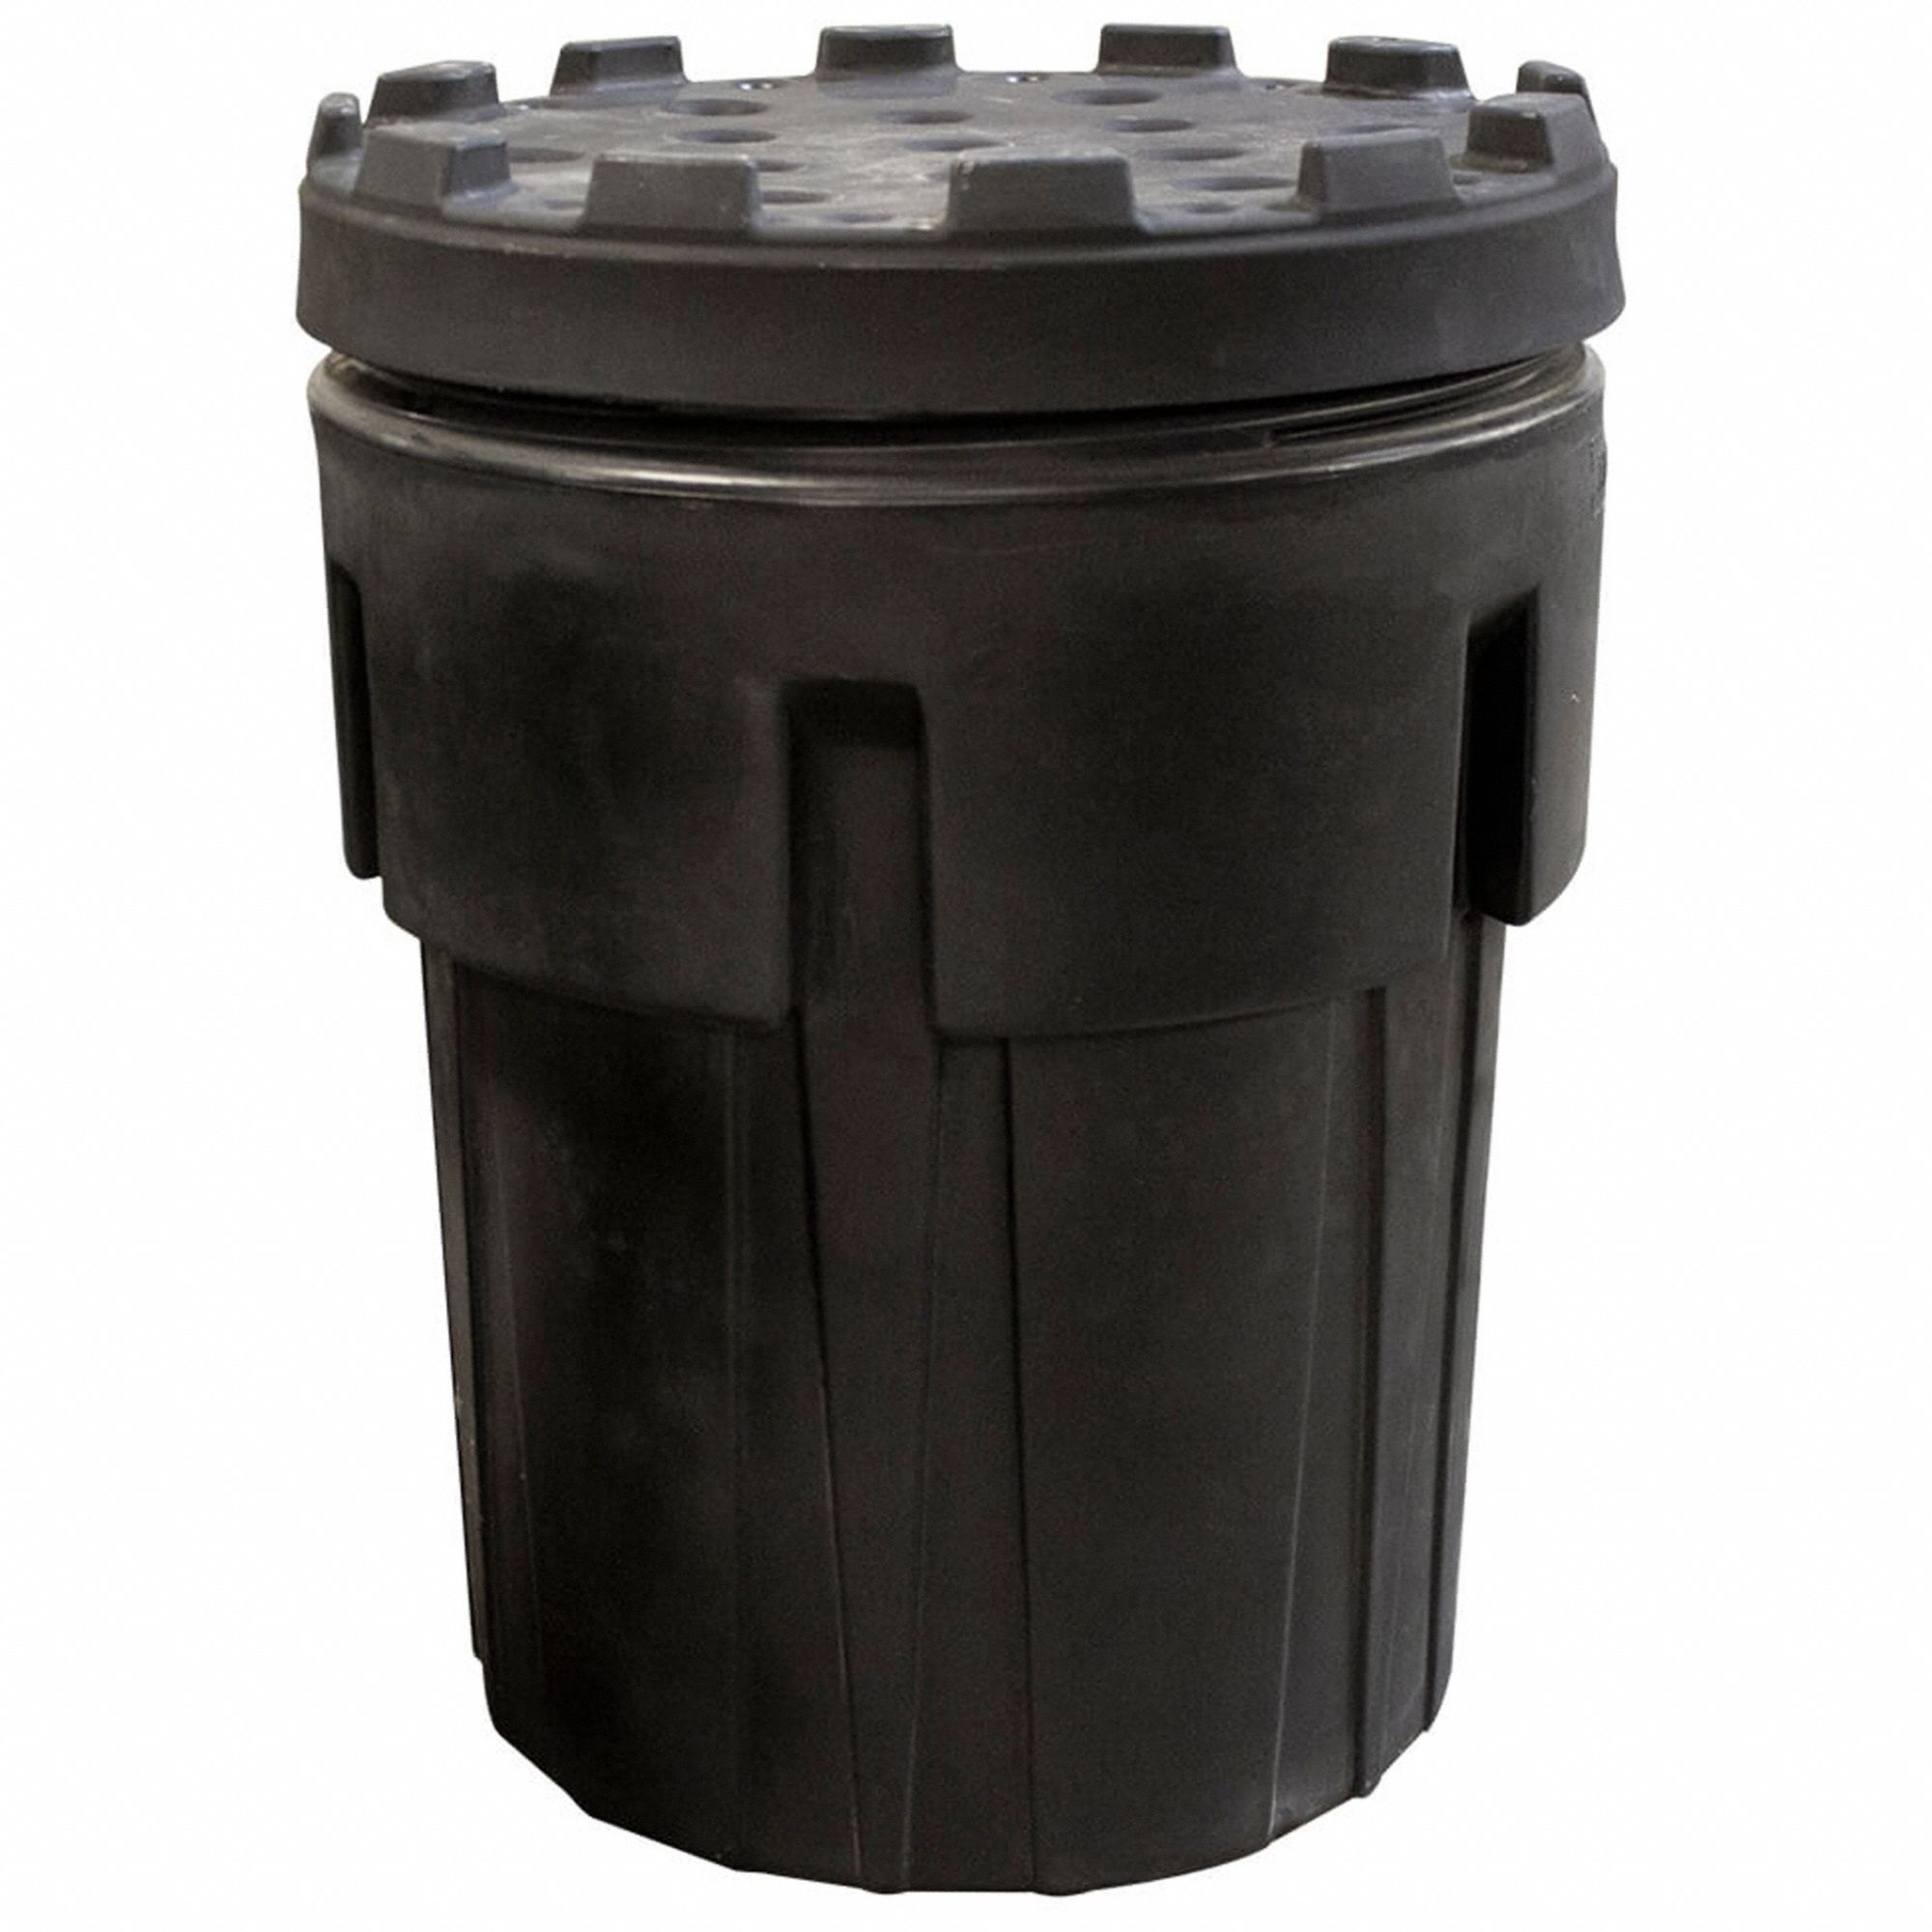 Overpack Drum: Polyethylene, 95 gal, Screw-On Lid, 41 1/2 in x 31 1/2 in